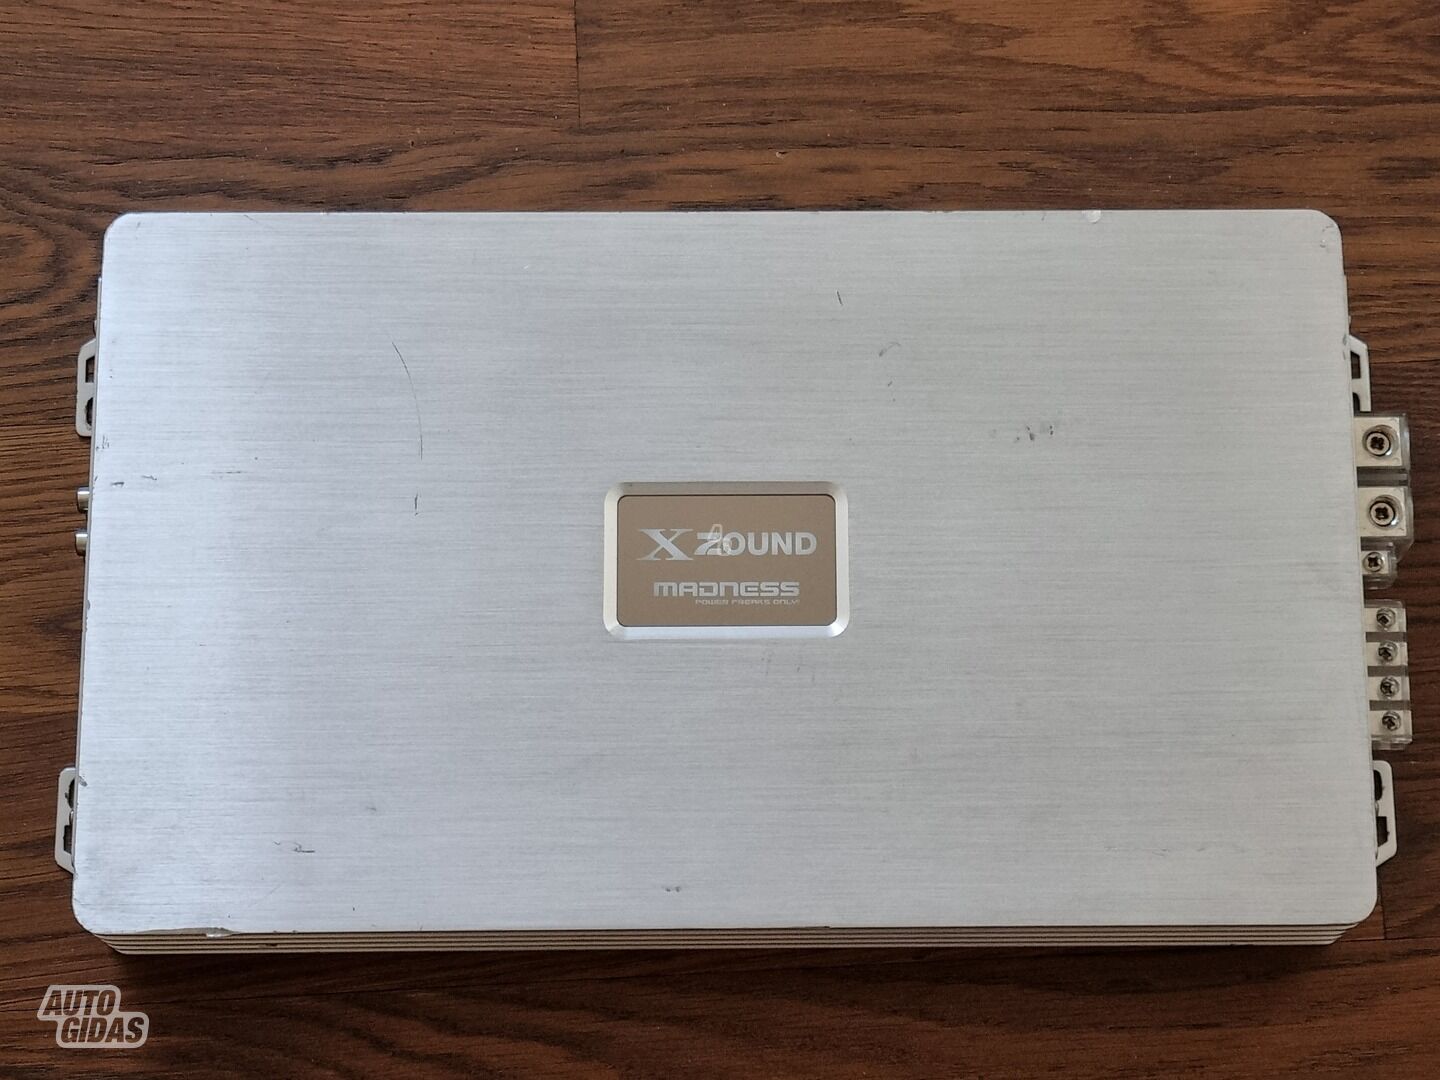 Xzound Madness X2000 Audio Amplifier